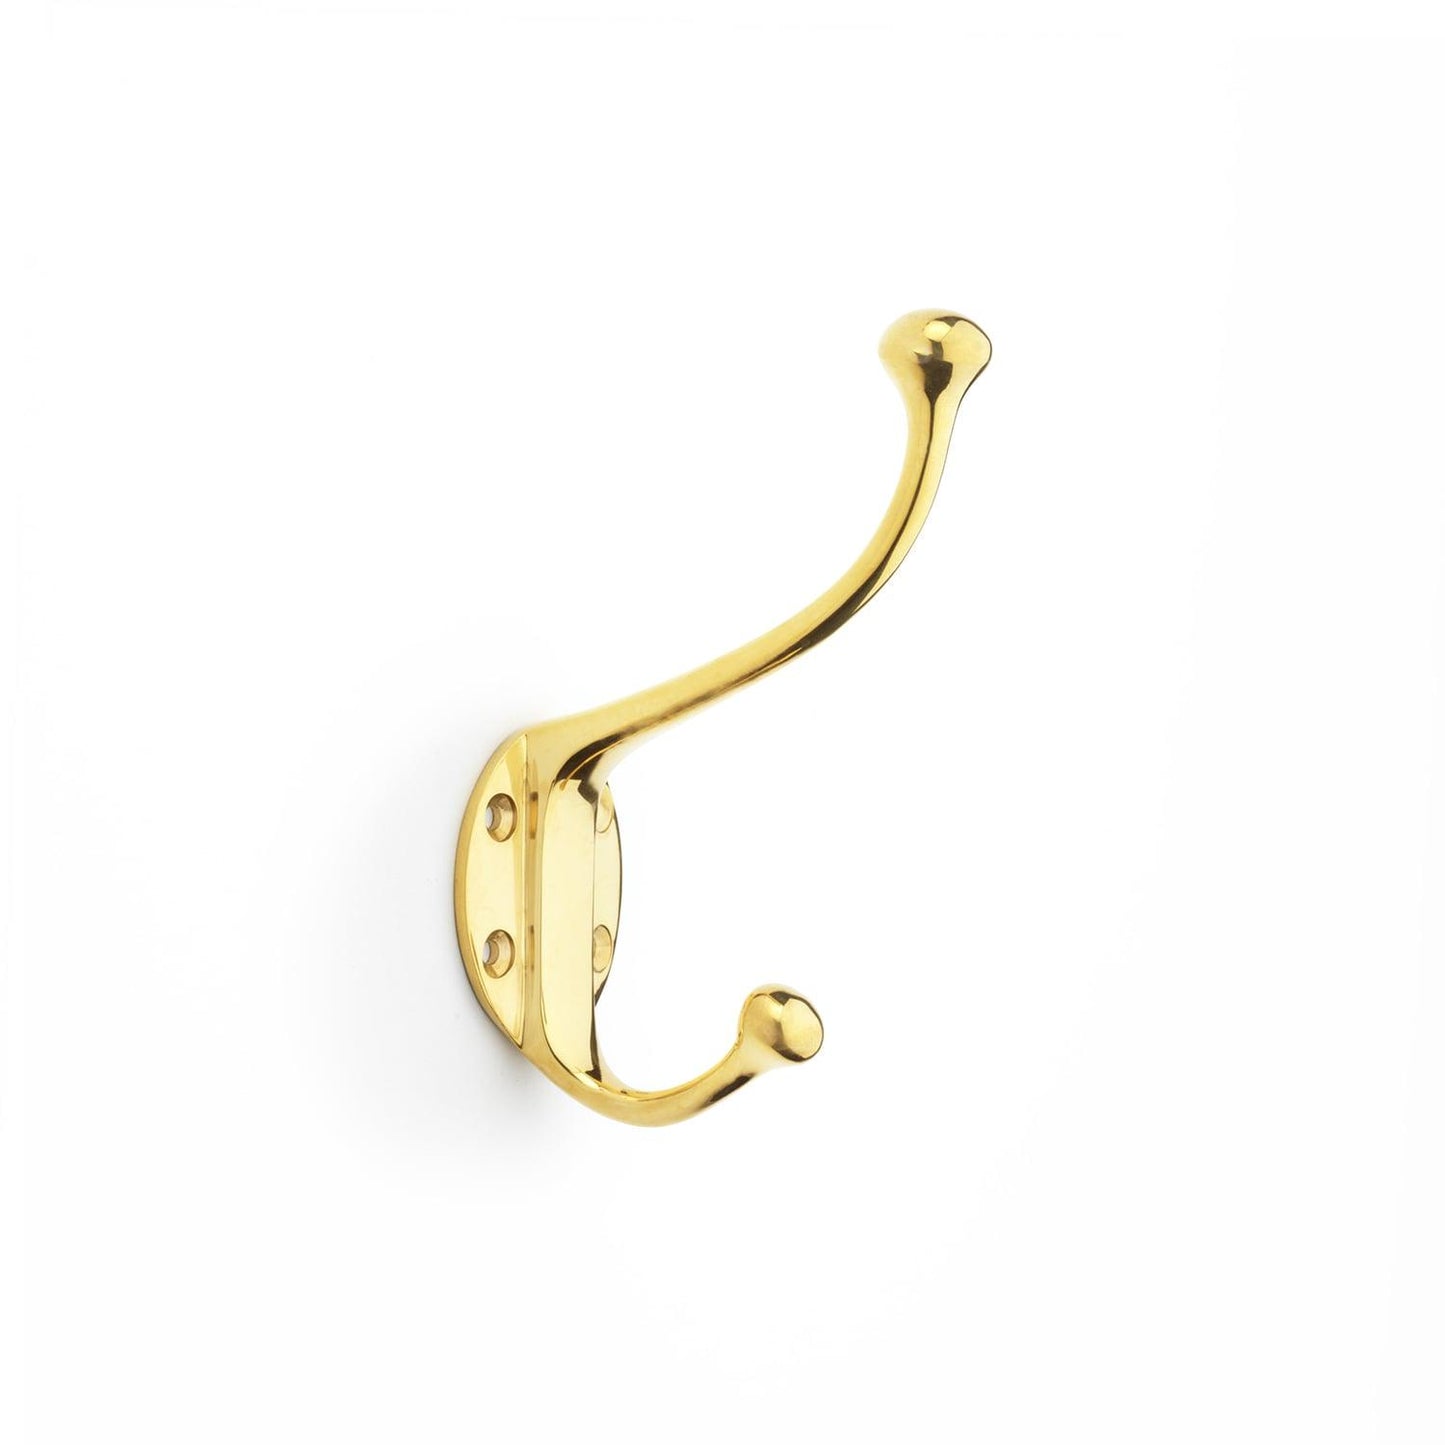 Brass Double Hat & Coat Hook - Bilden Home & Hardware Market